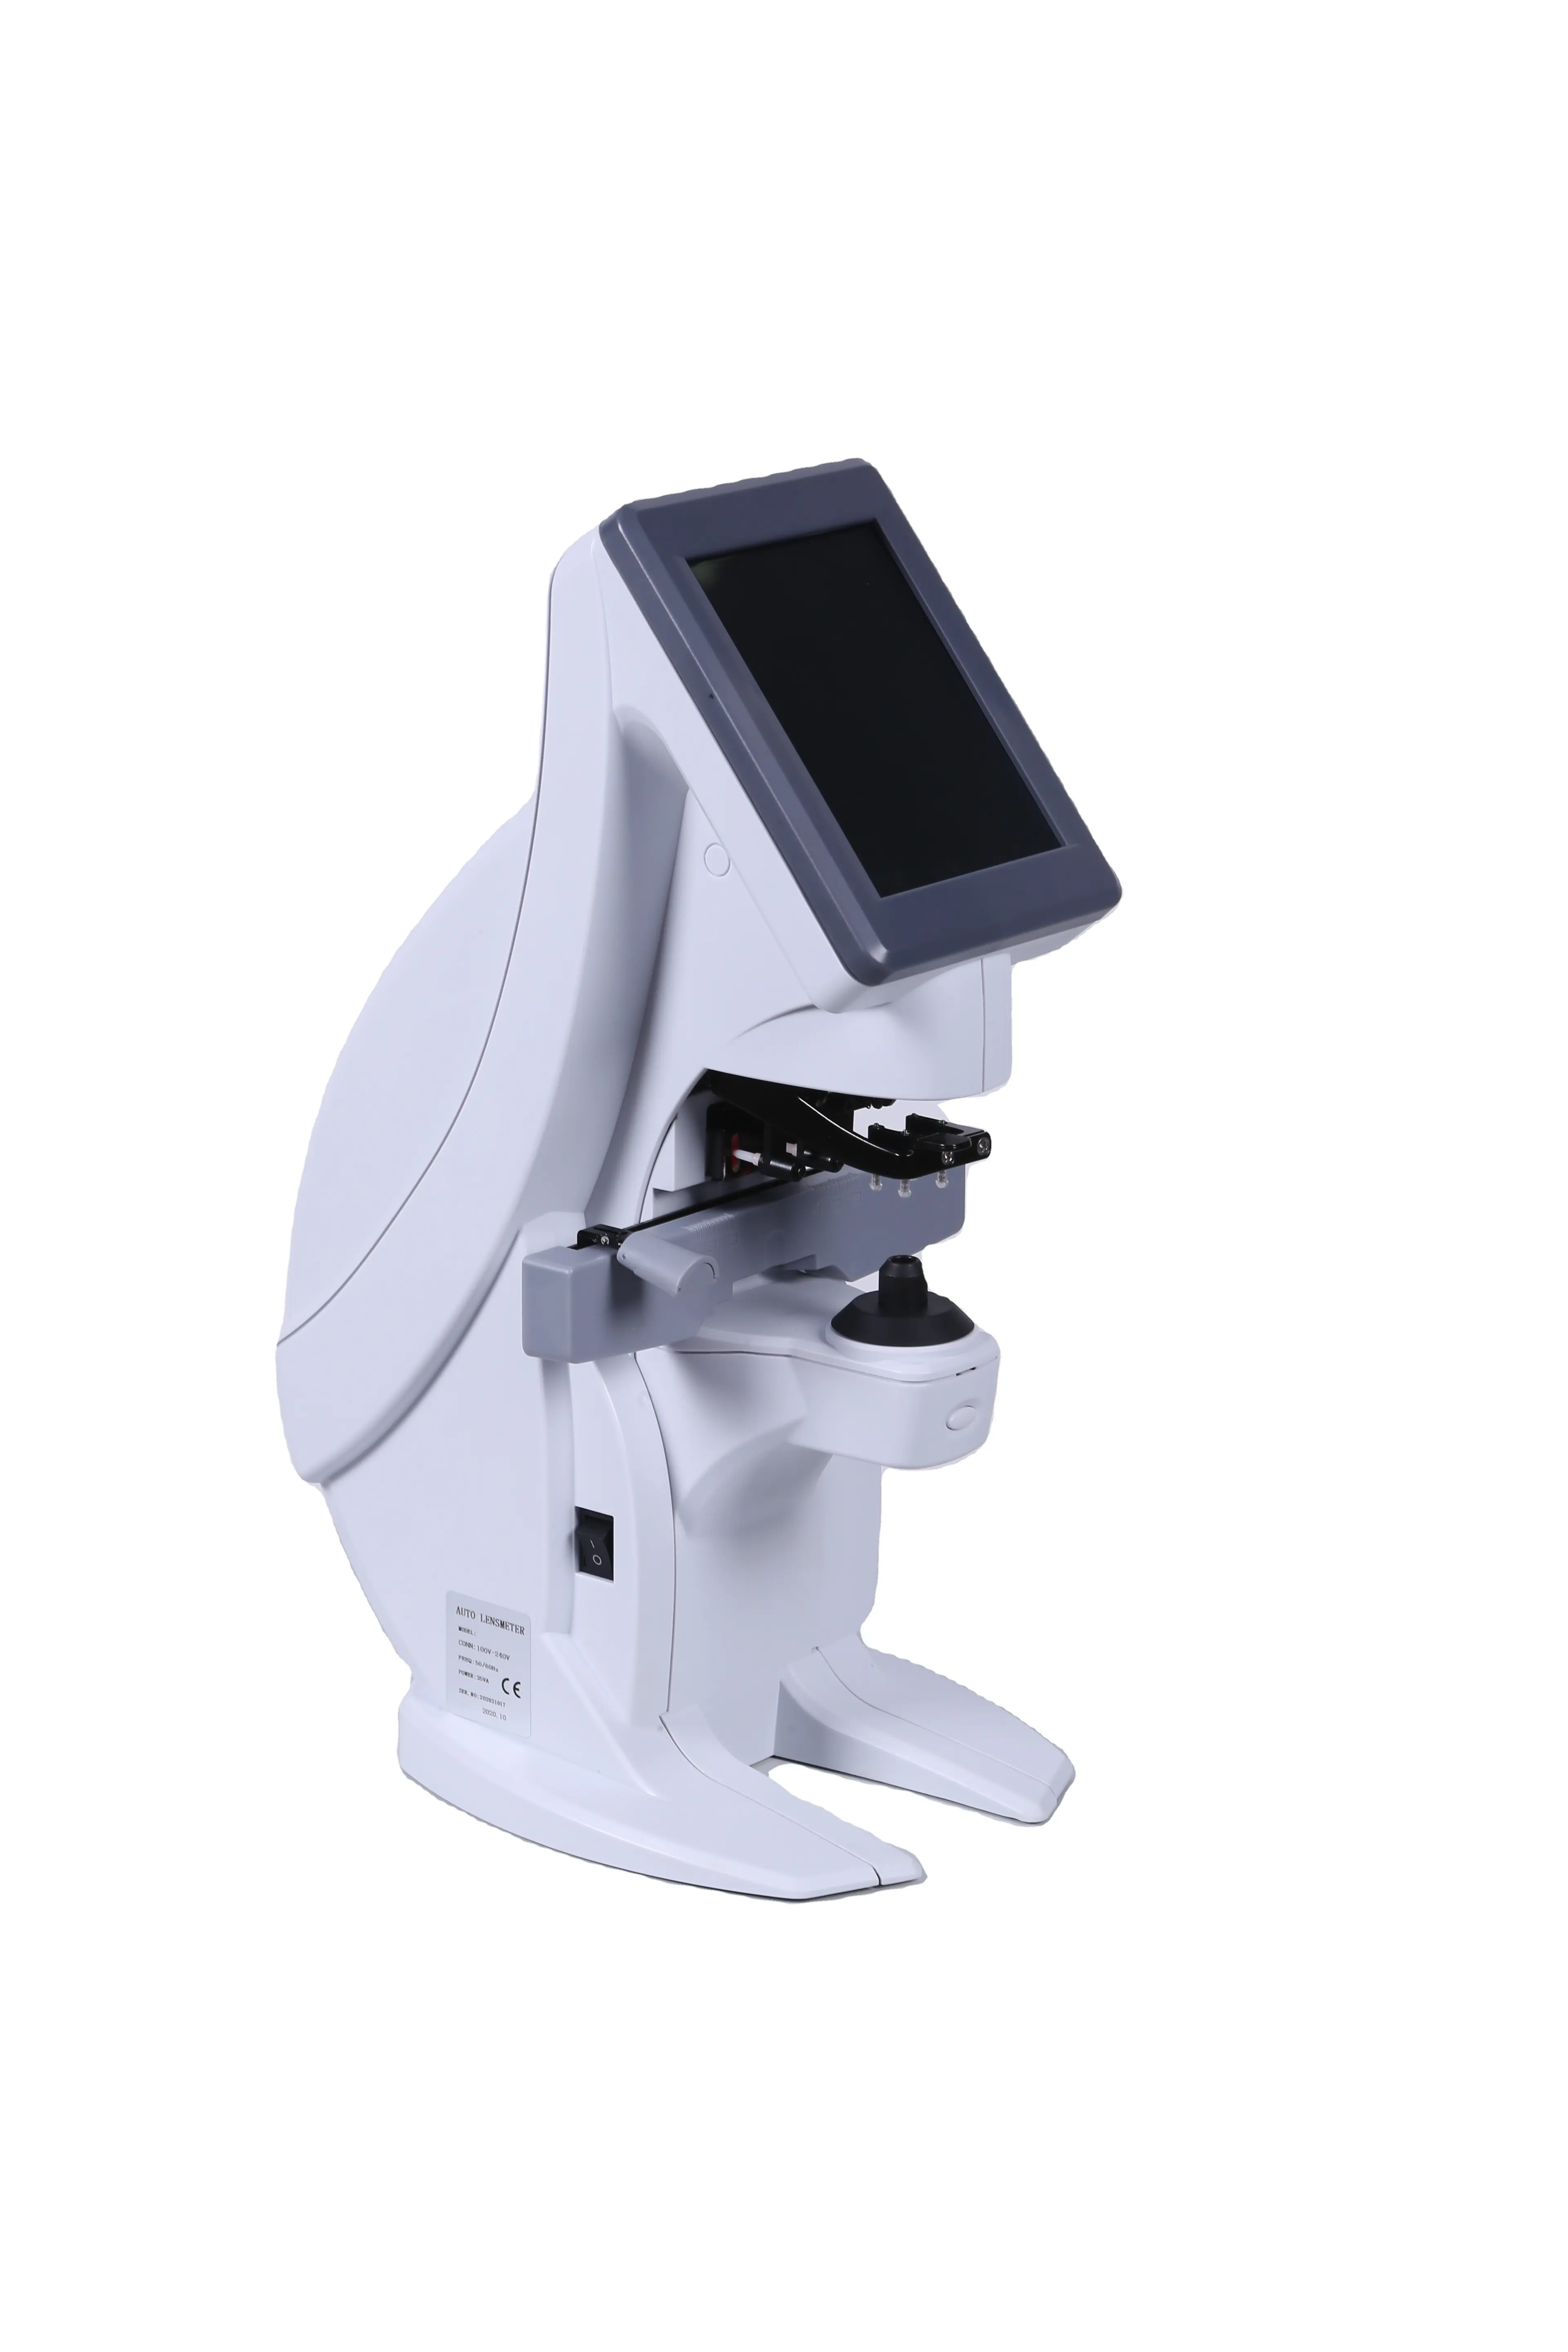 Equipo de Optometría de alta calidad, medidor de lentes Digital, medidor de lentes automático, instrumento de Optometría automática para talleres ópticos